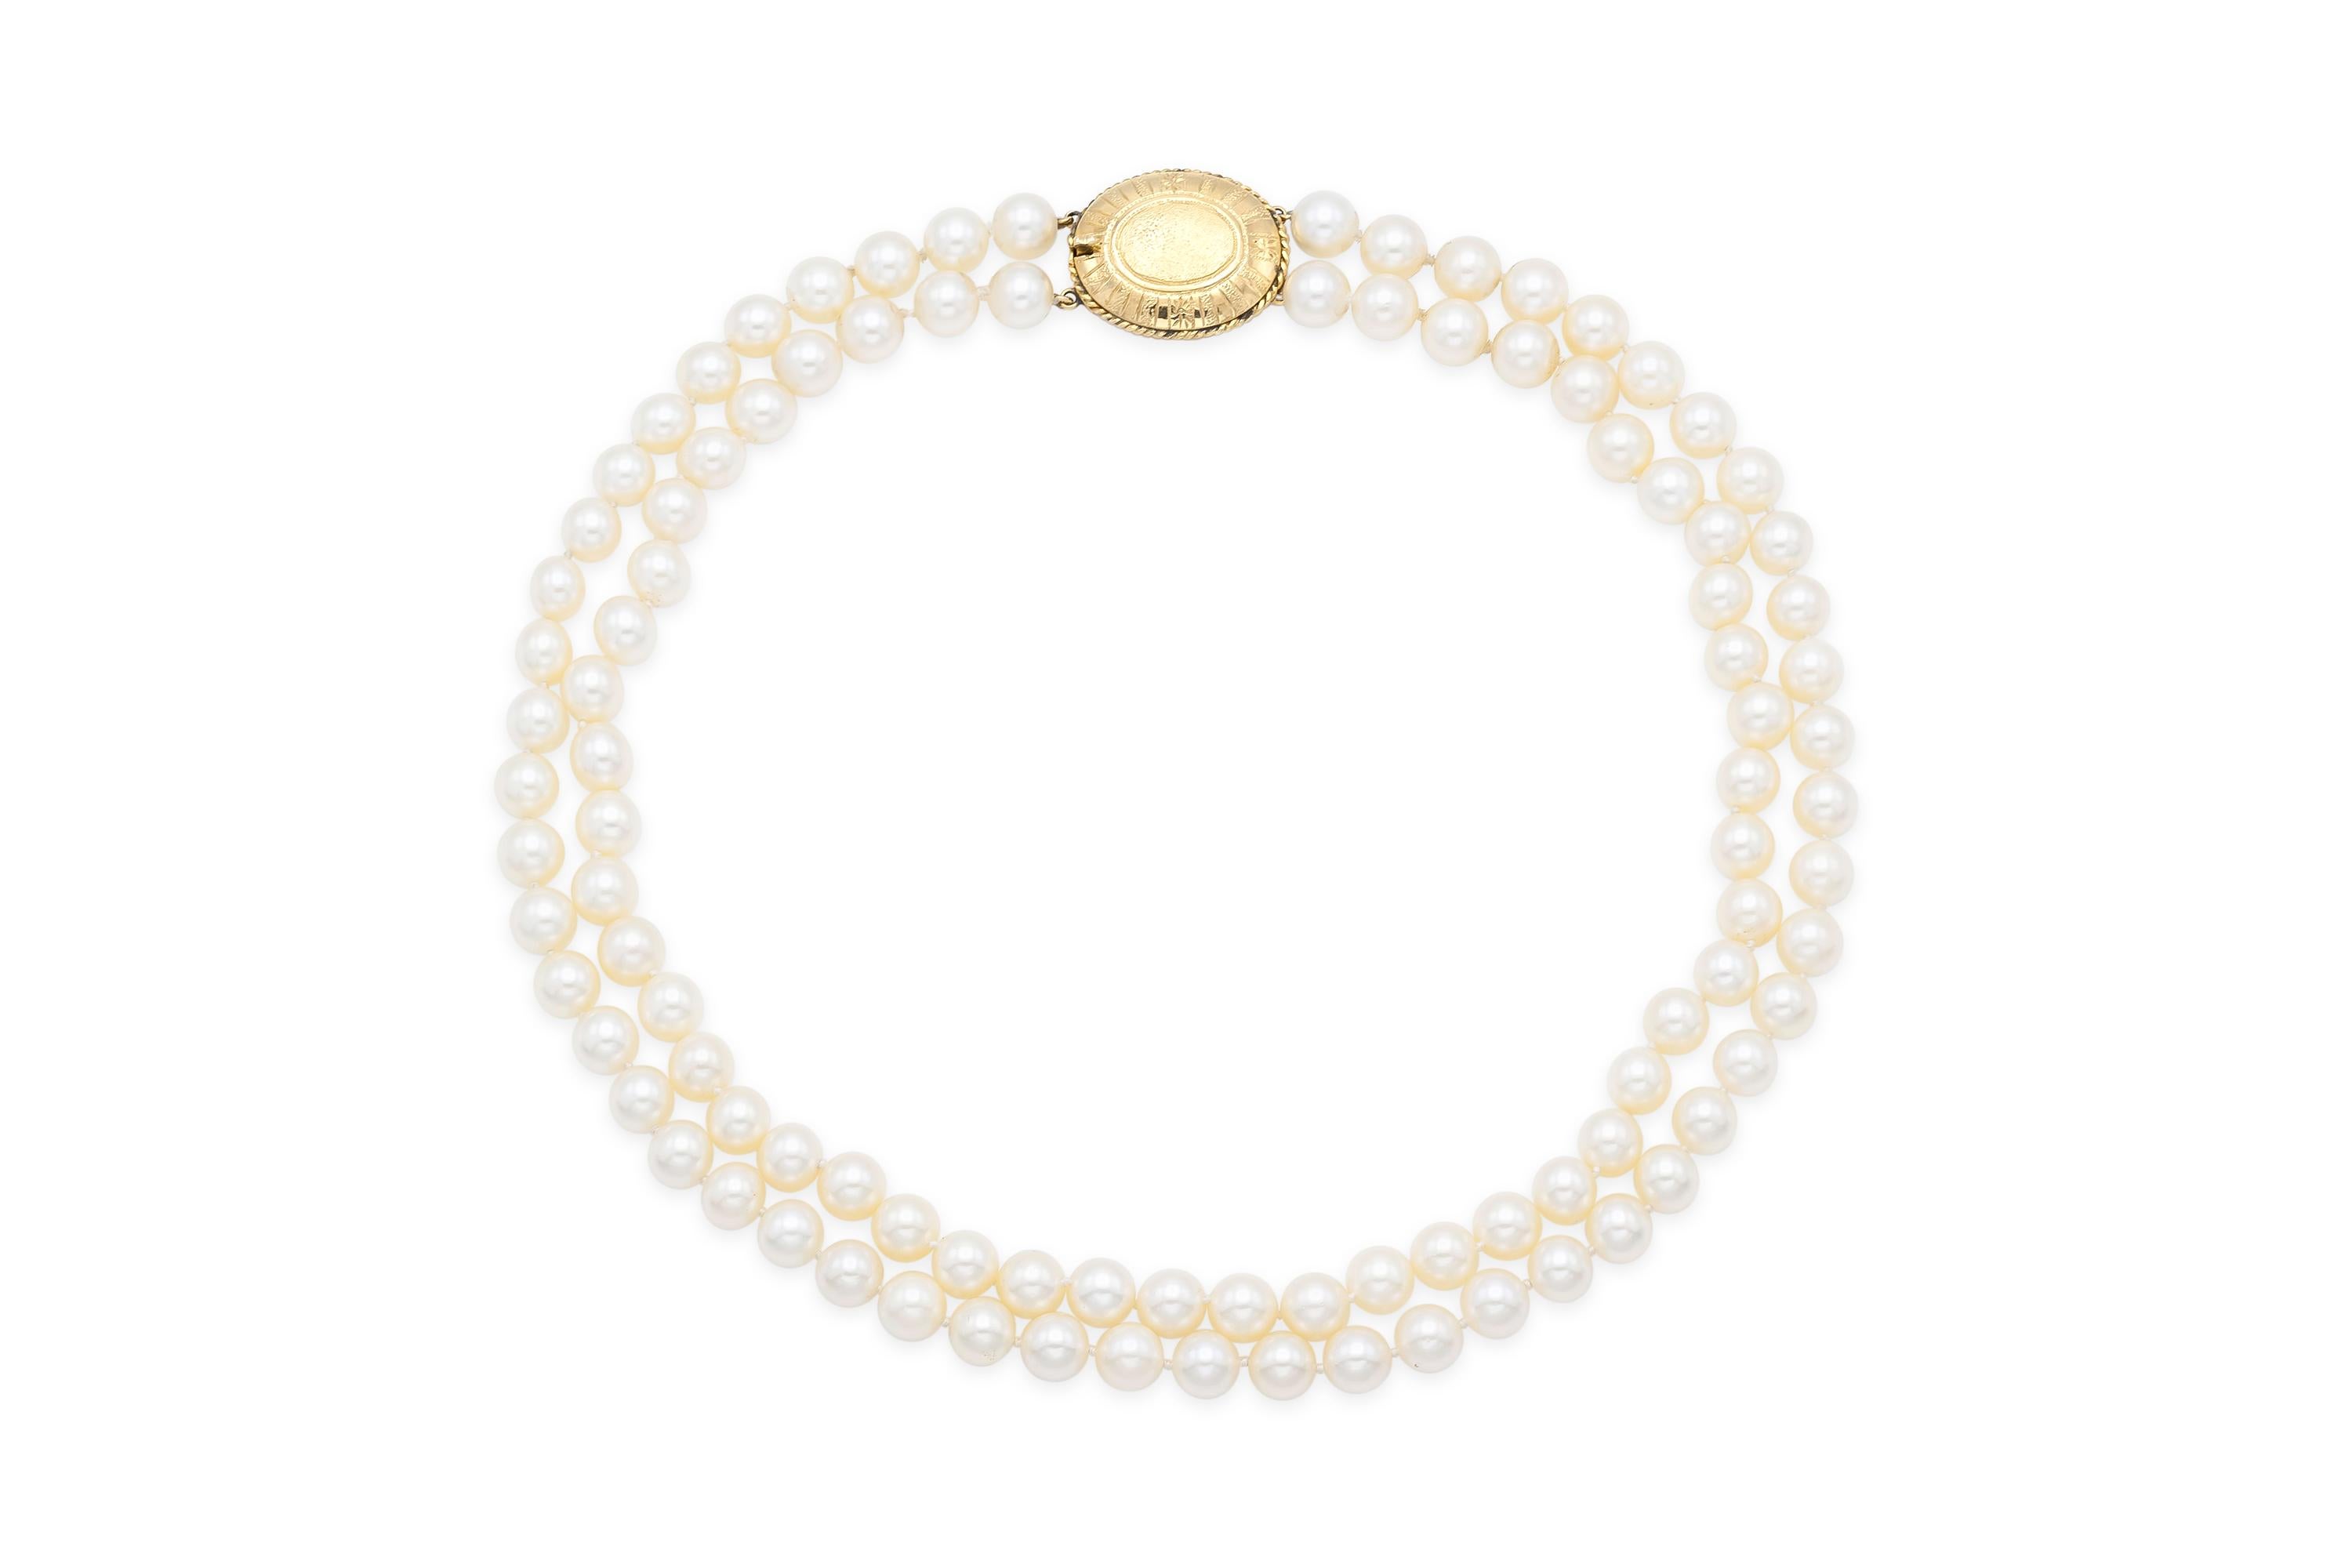 Fein aufgereiht mit 100 Perlen der Größe 8 - 8 1/2 mm.
Die Schließe ist fein aus 18 Karat Gelbgold gearbeitet.